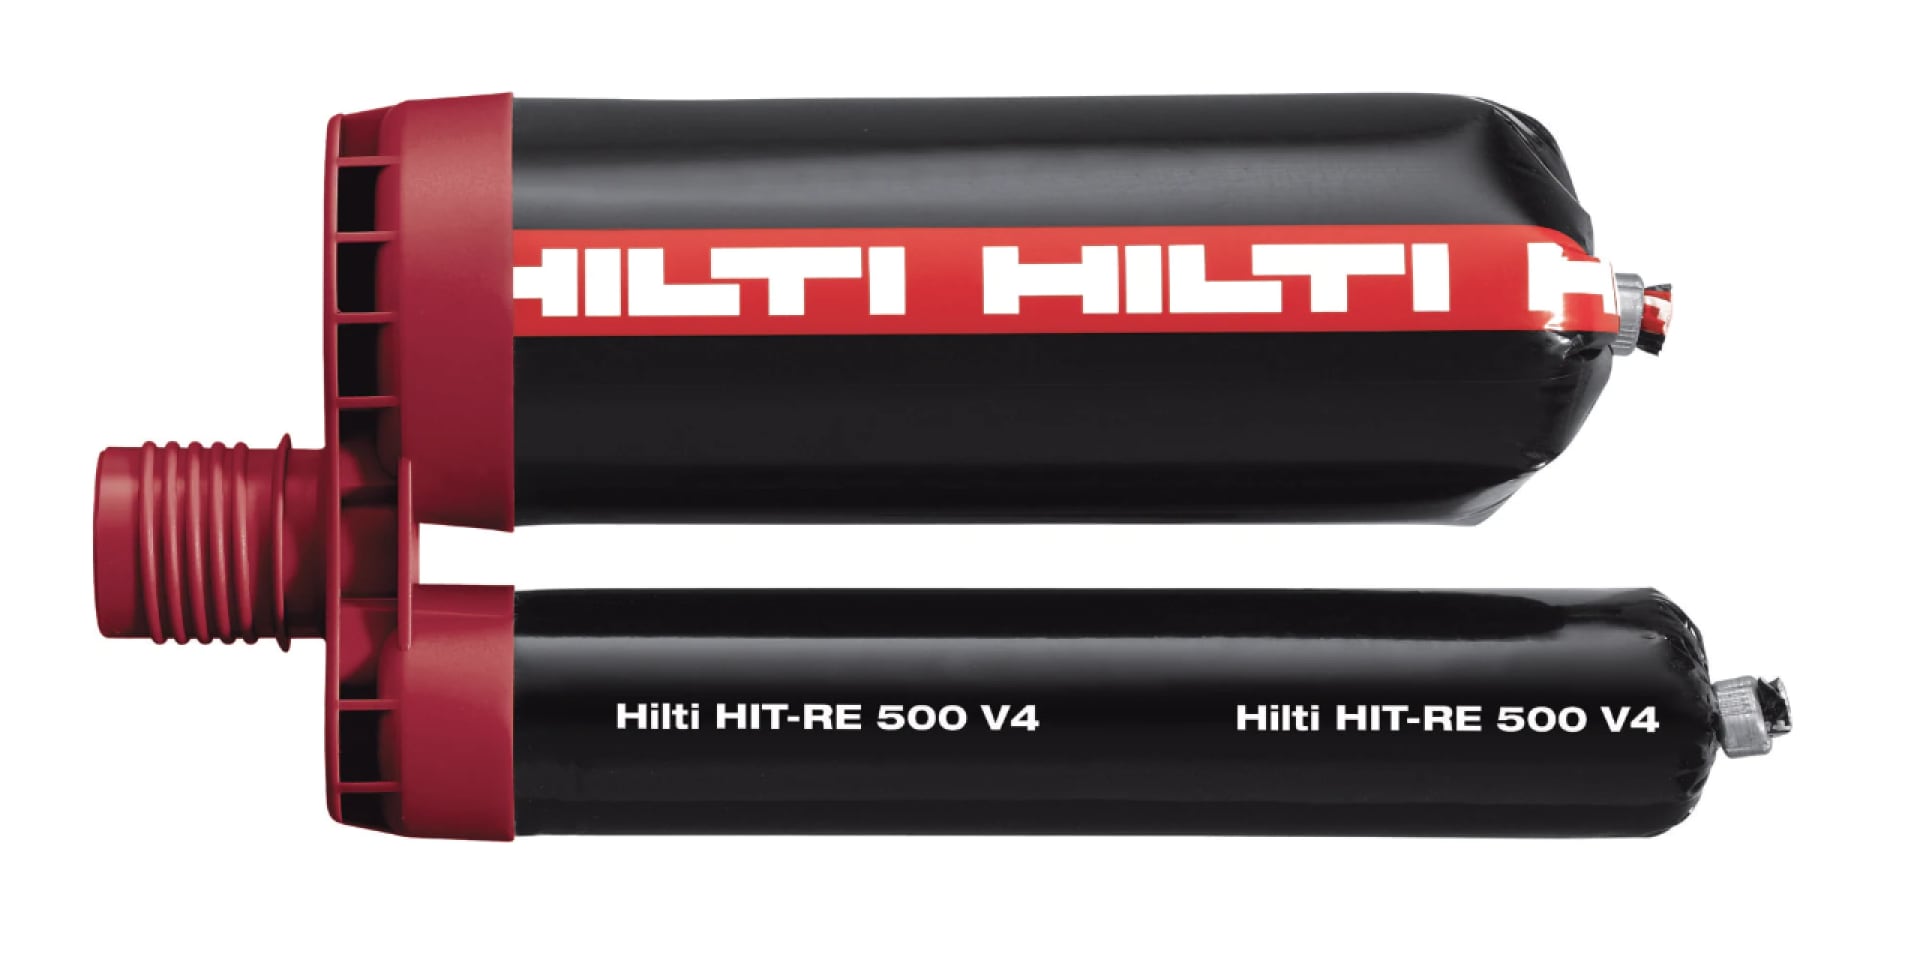 HIT-RE 500 V3 epoxy mortar